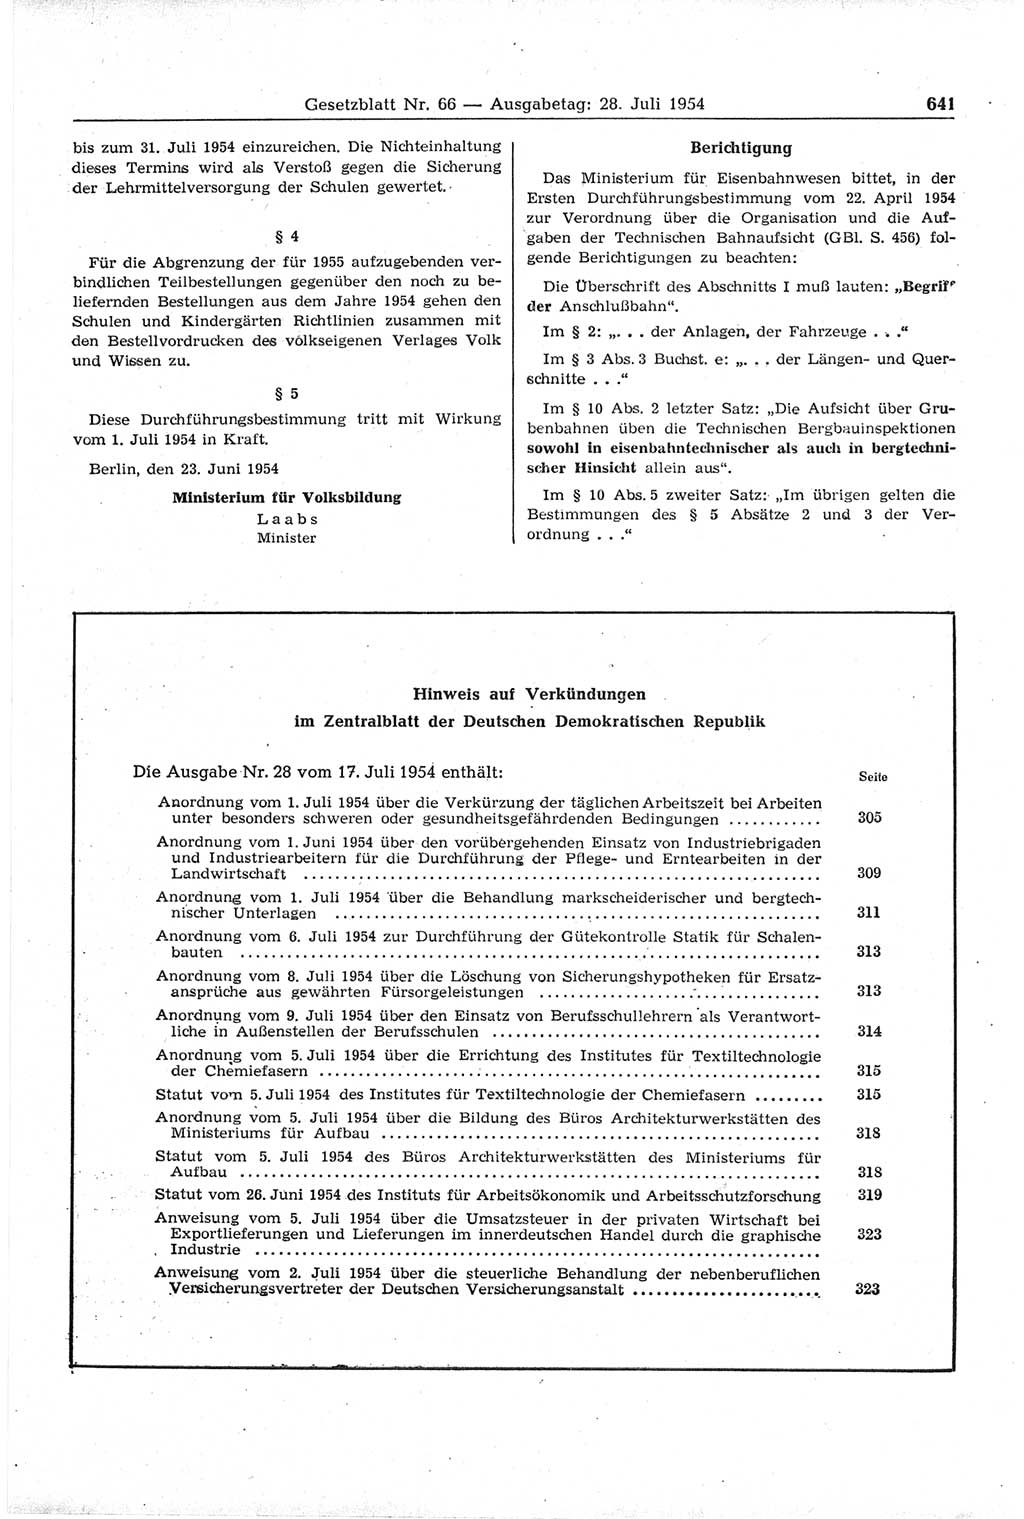 Gesetzblatt (GBl.) der Deutschen Demokratischen Republik (DDR) 1954, Seite 641 (GBl. DDR 1954, S. 641)